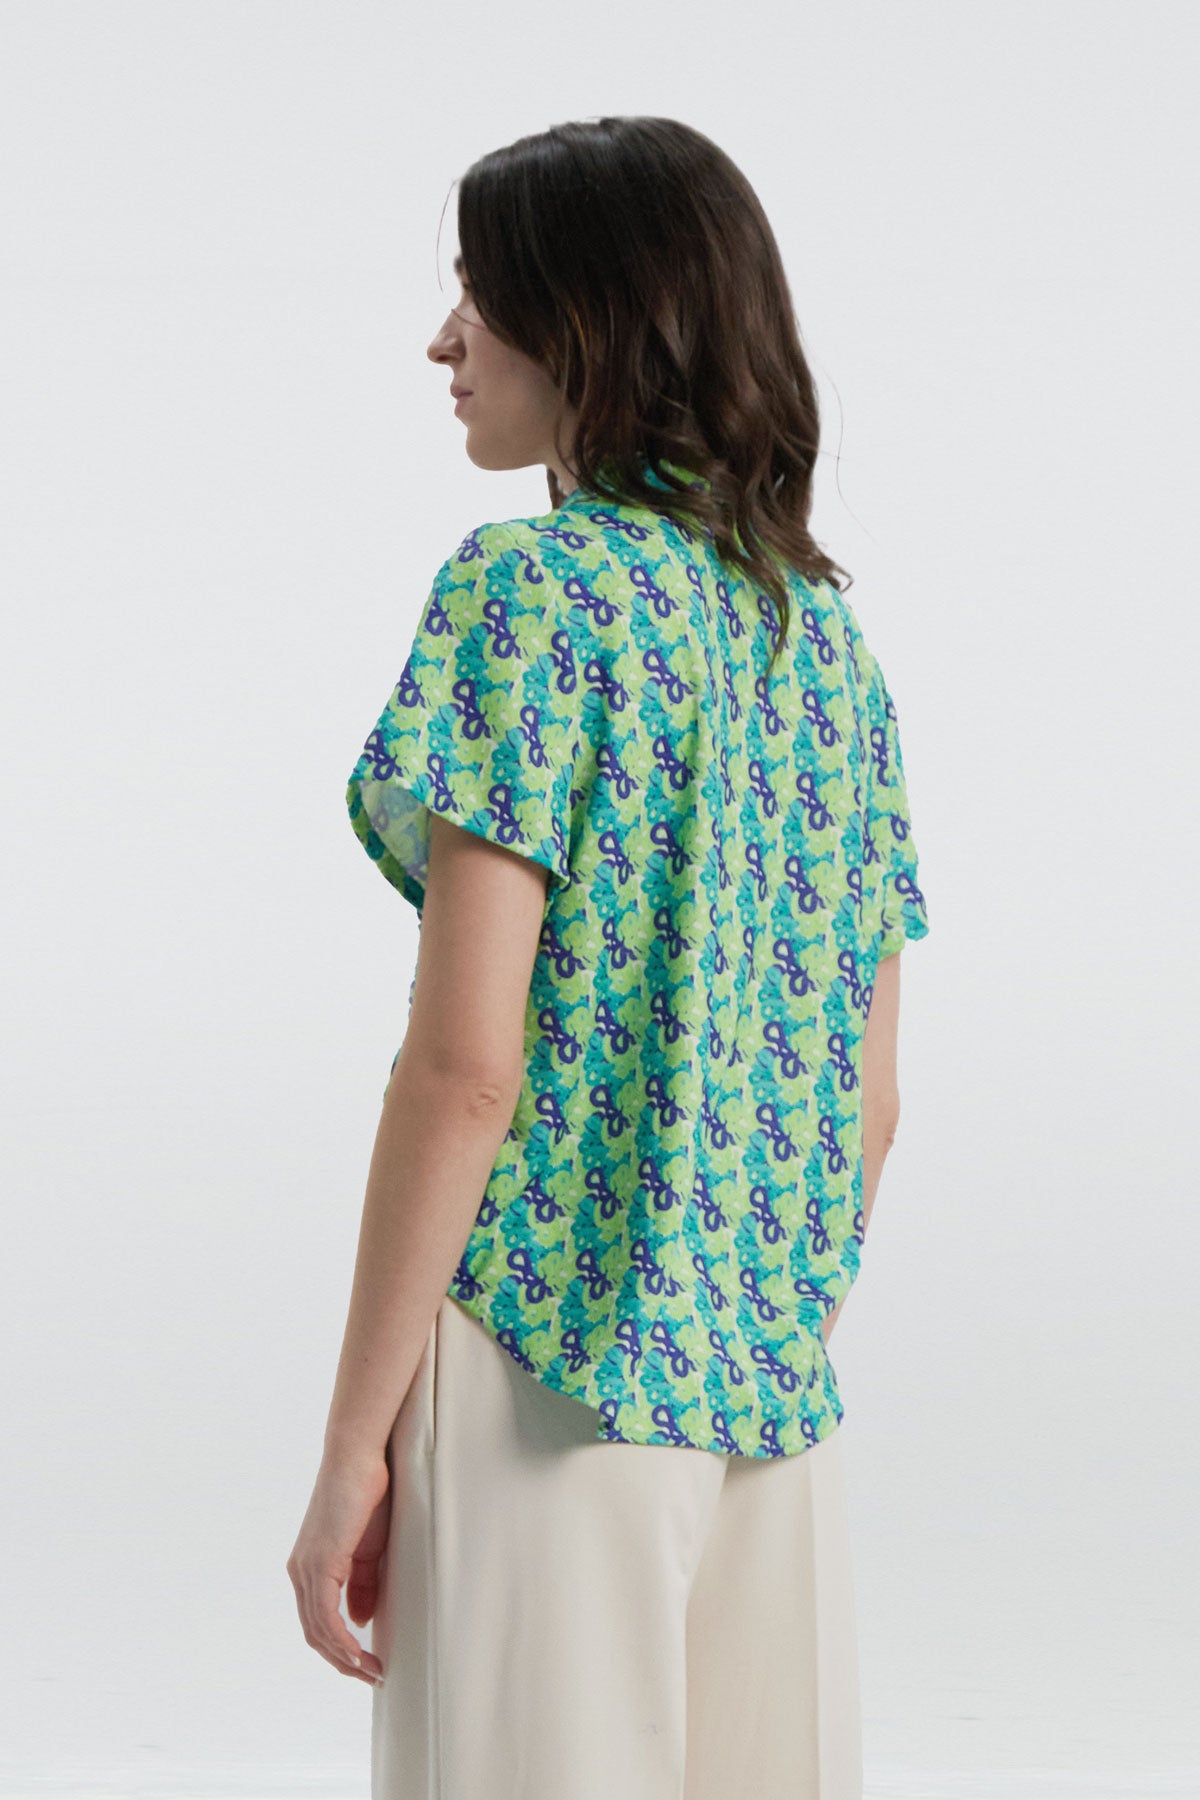 Camisa manga corta con estampado cascada de Sepiia, fresca y elegante, perfecta para el verano. Foto espalda